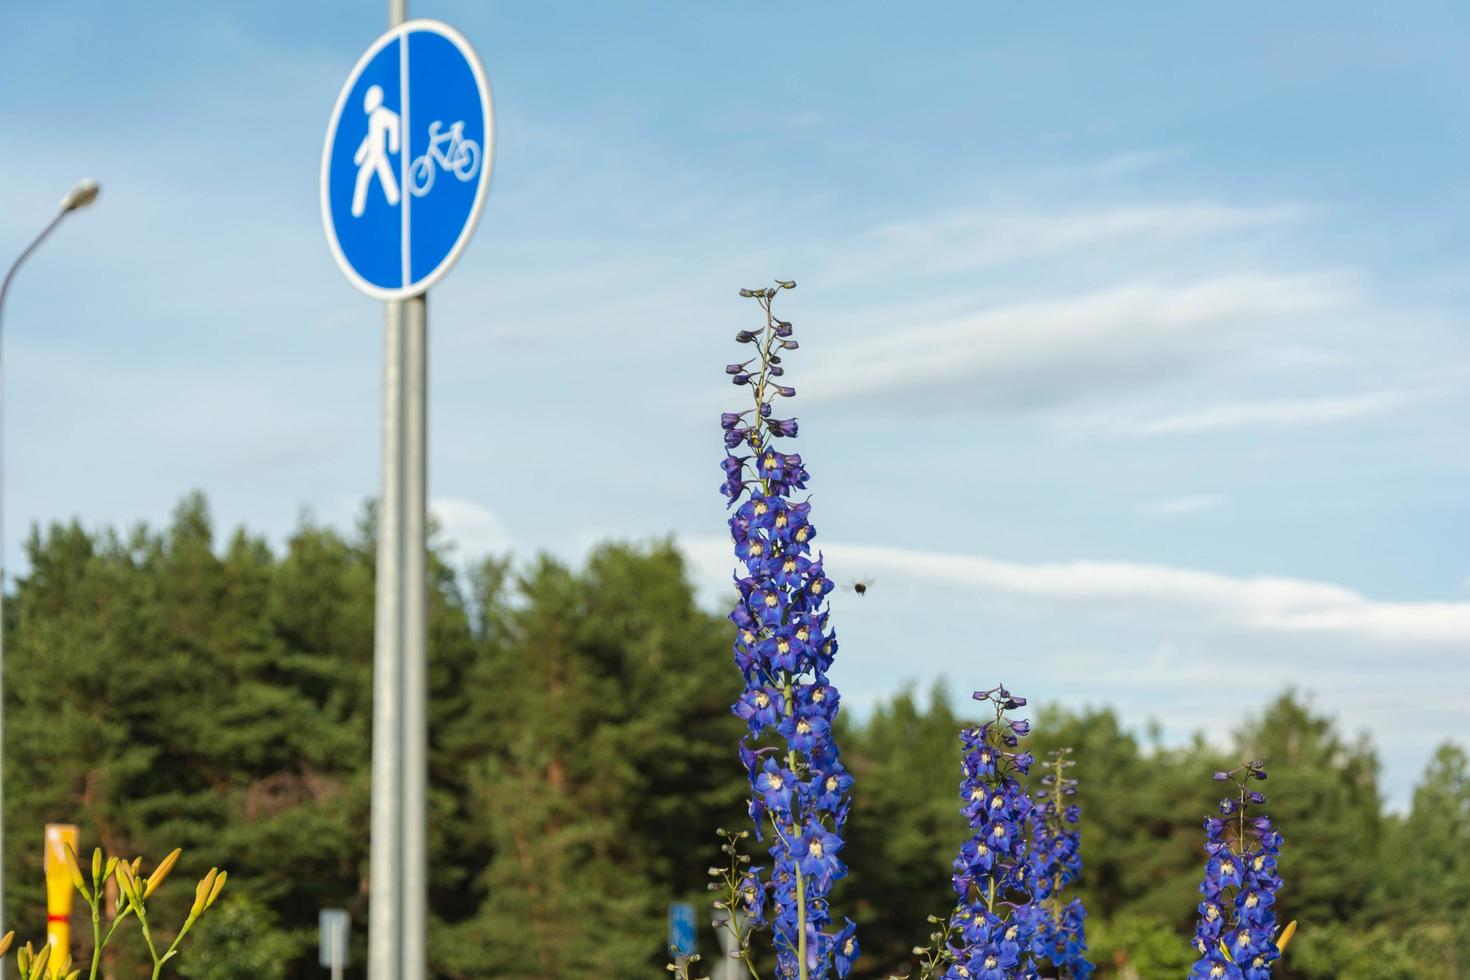 fleurs de delphinium bleu sur le fond d'une piste cyclable et d'une autoroute avec des cyclistes et des voitures qui passent, un paysage urbain photo